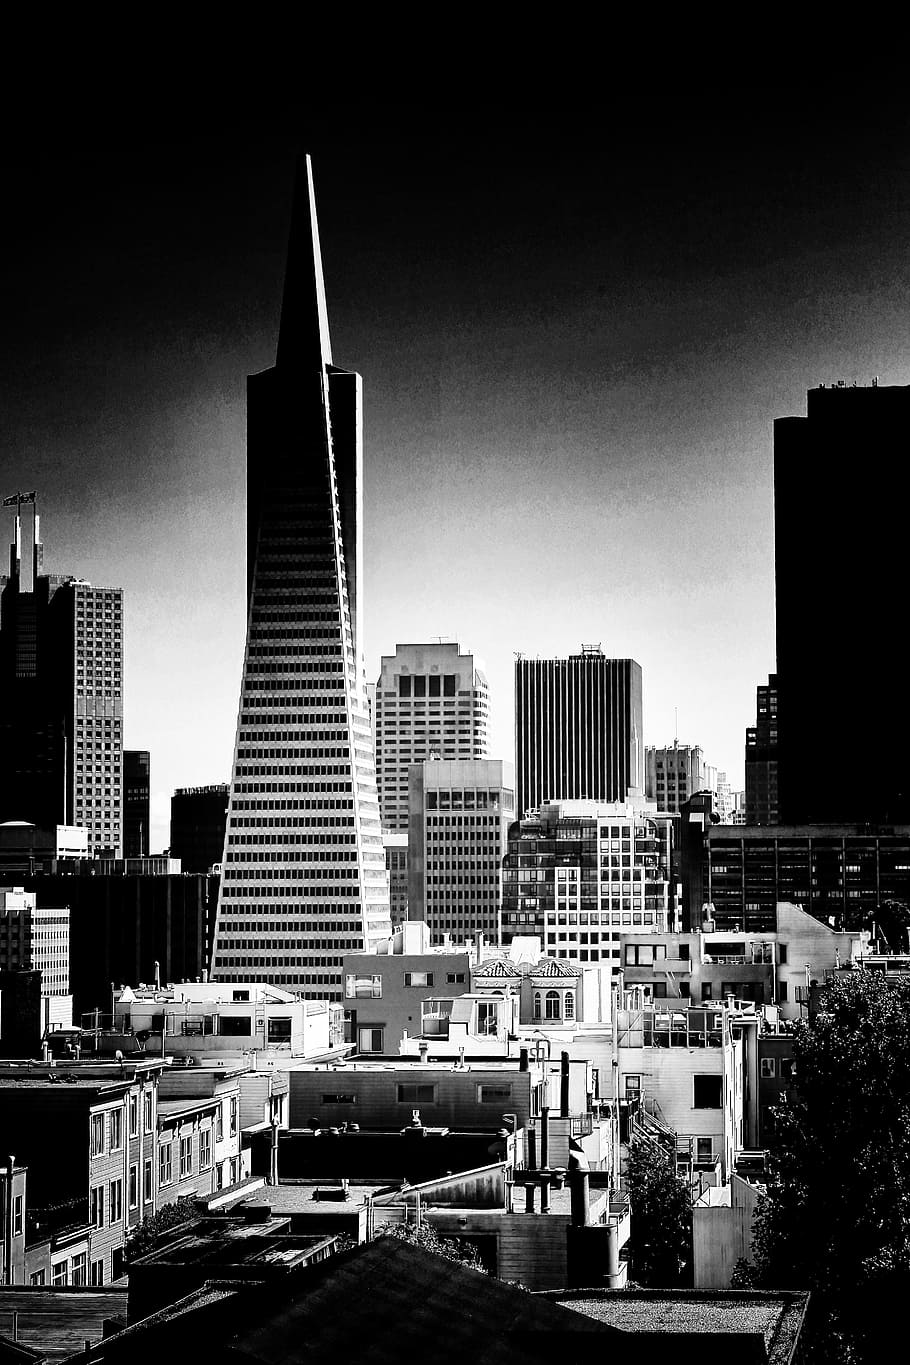 トランスアメリカピラミッド, 建築, 建物, 有名な, サンフランシスコ, カリフォルニア, 都市, アメリカ, ランドマーク, 高層ビル